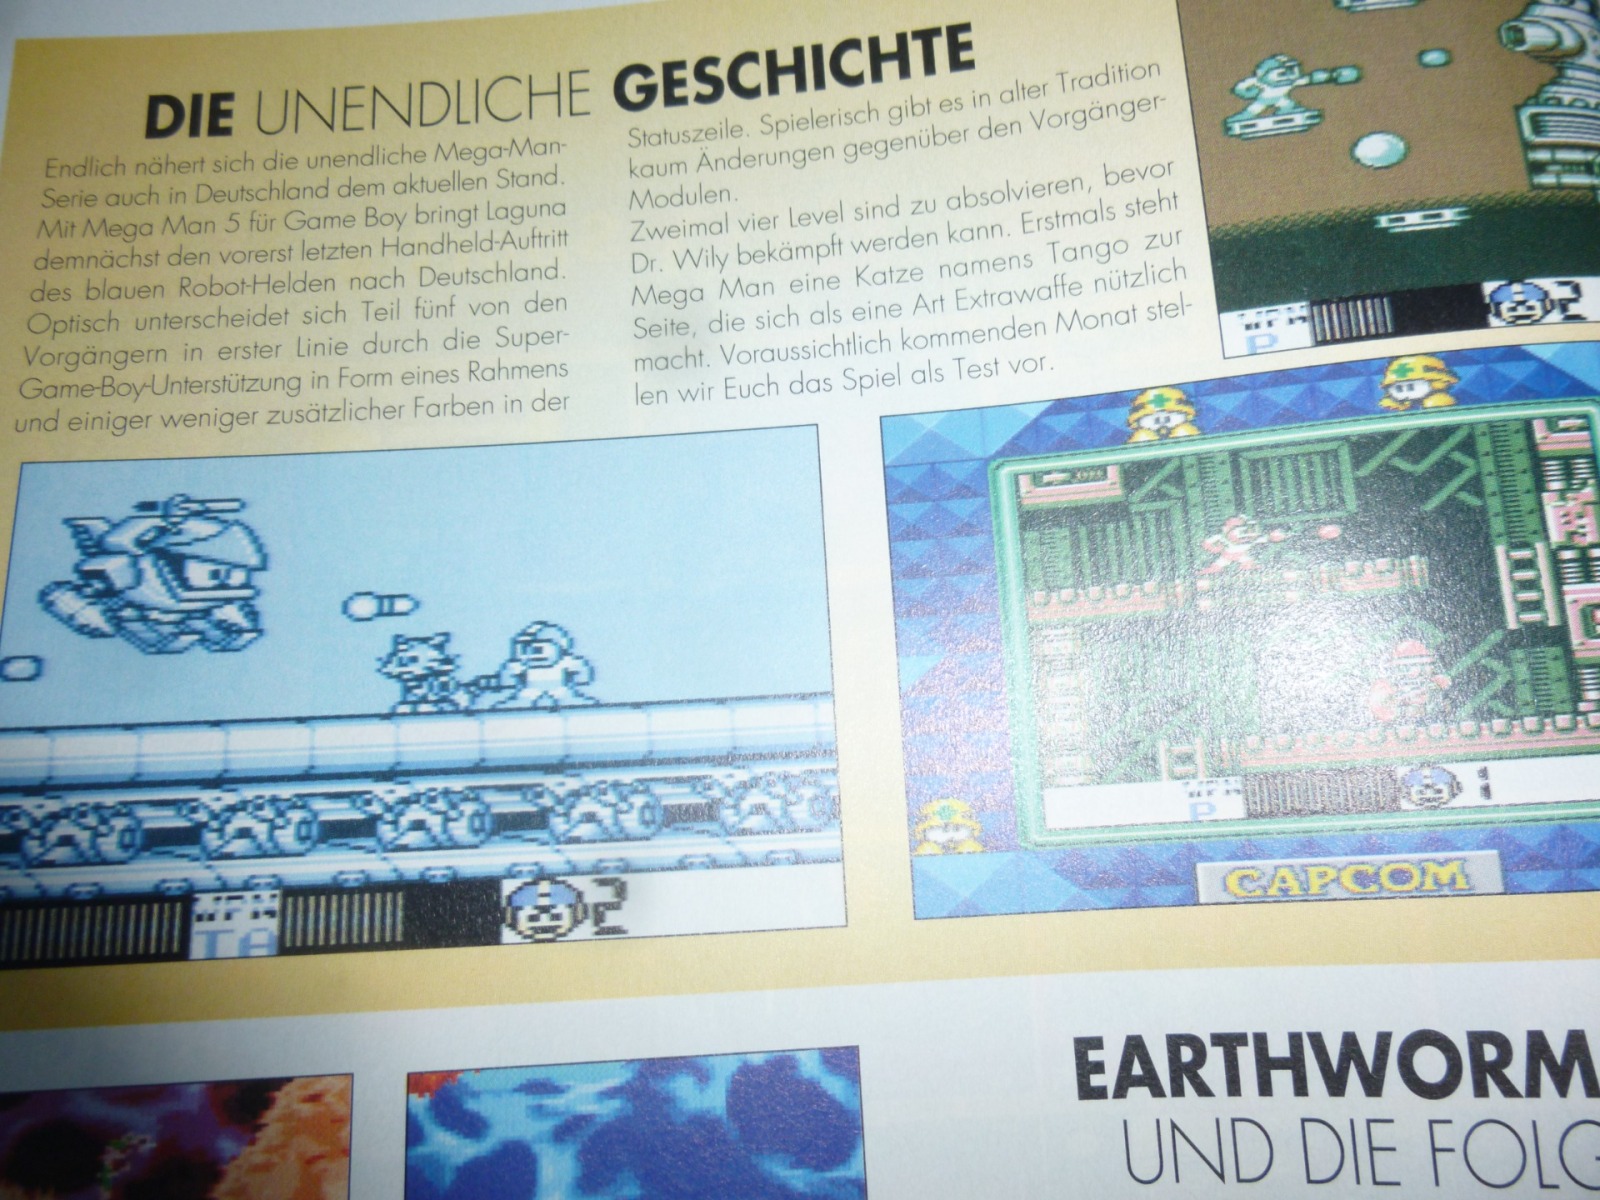 TOTAL Das unabhängige Magazin - 100 Nintendo - Ausgabe 4/96 1996 4